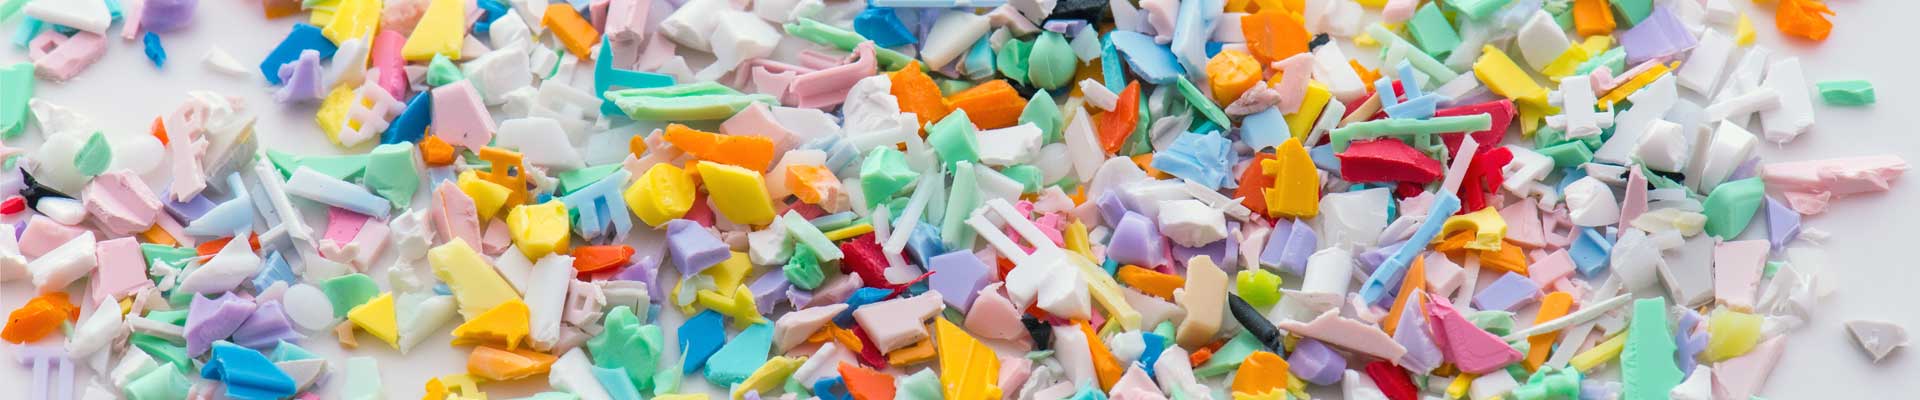 Recyclage moderne des matières plastiques